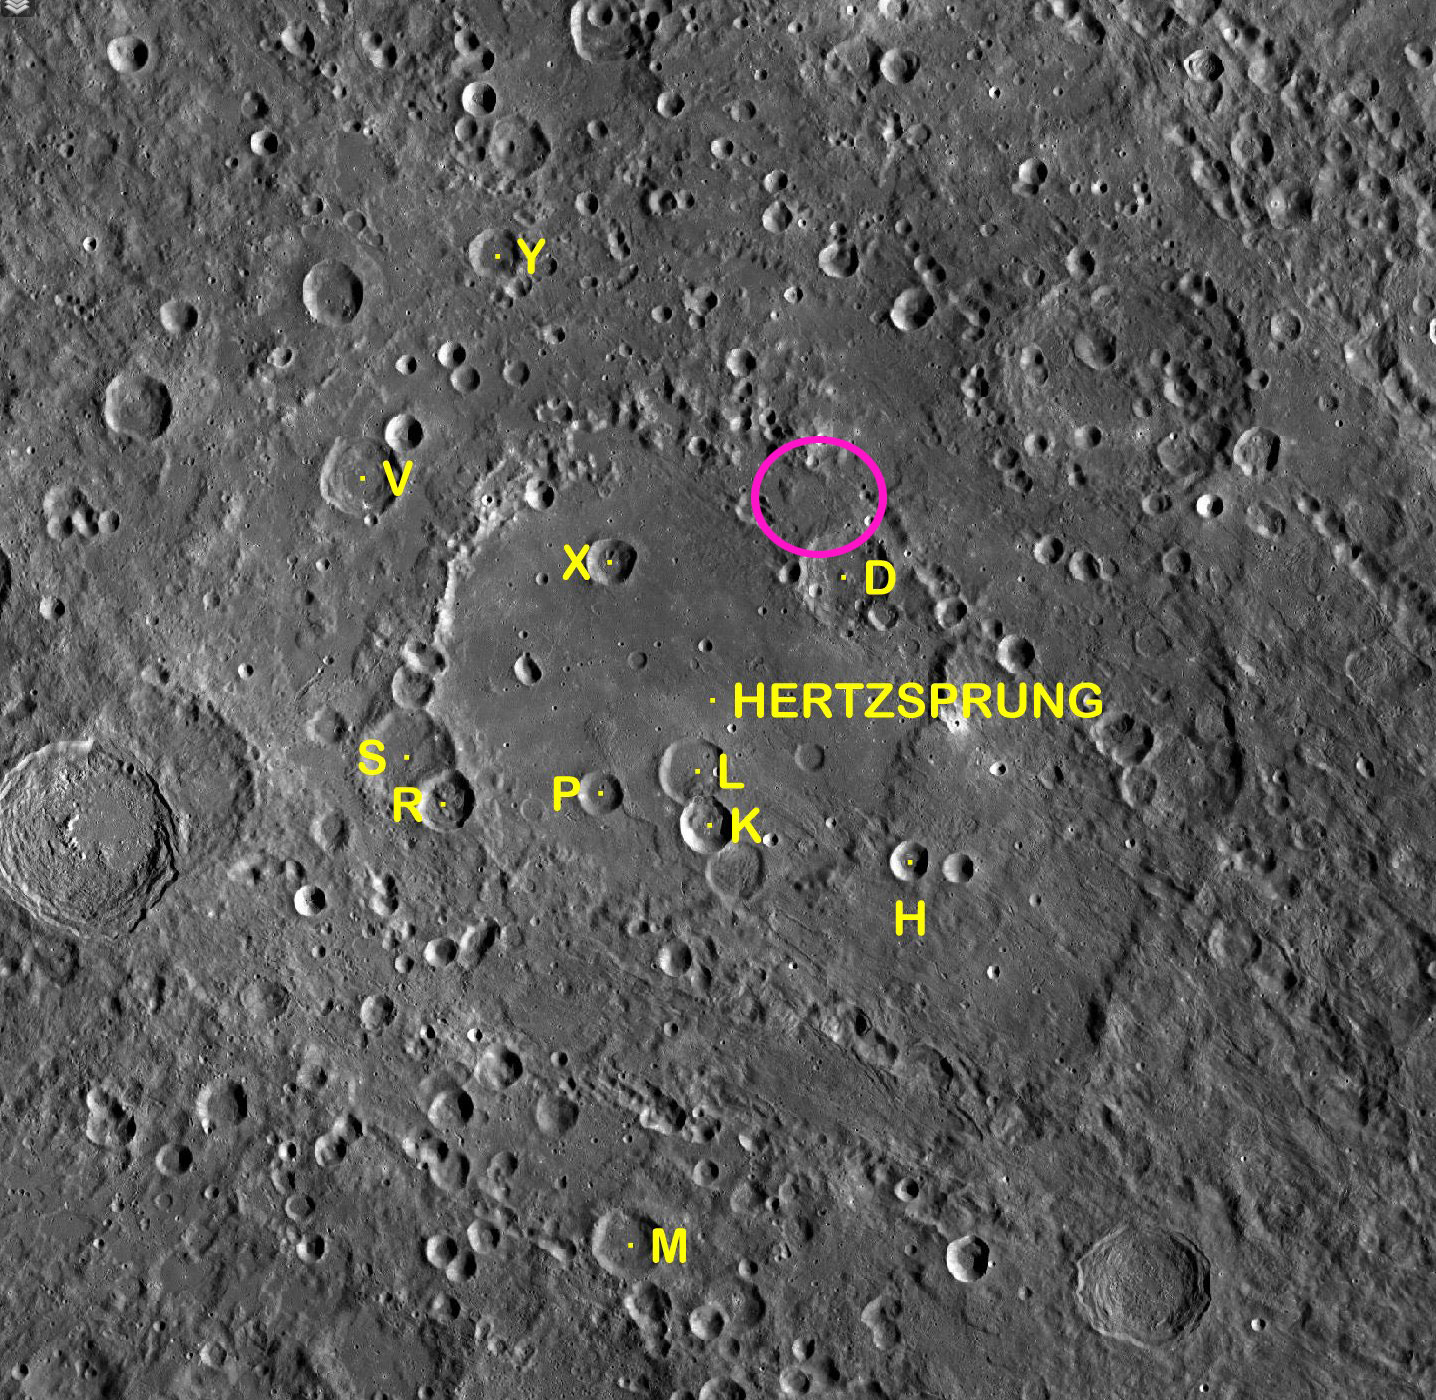 L'area dell'impatto del secondo stadio del Falcon-9 sulla Luna